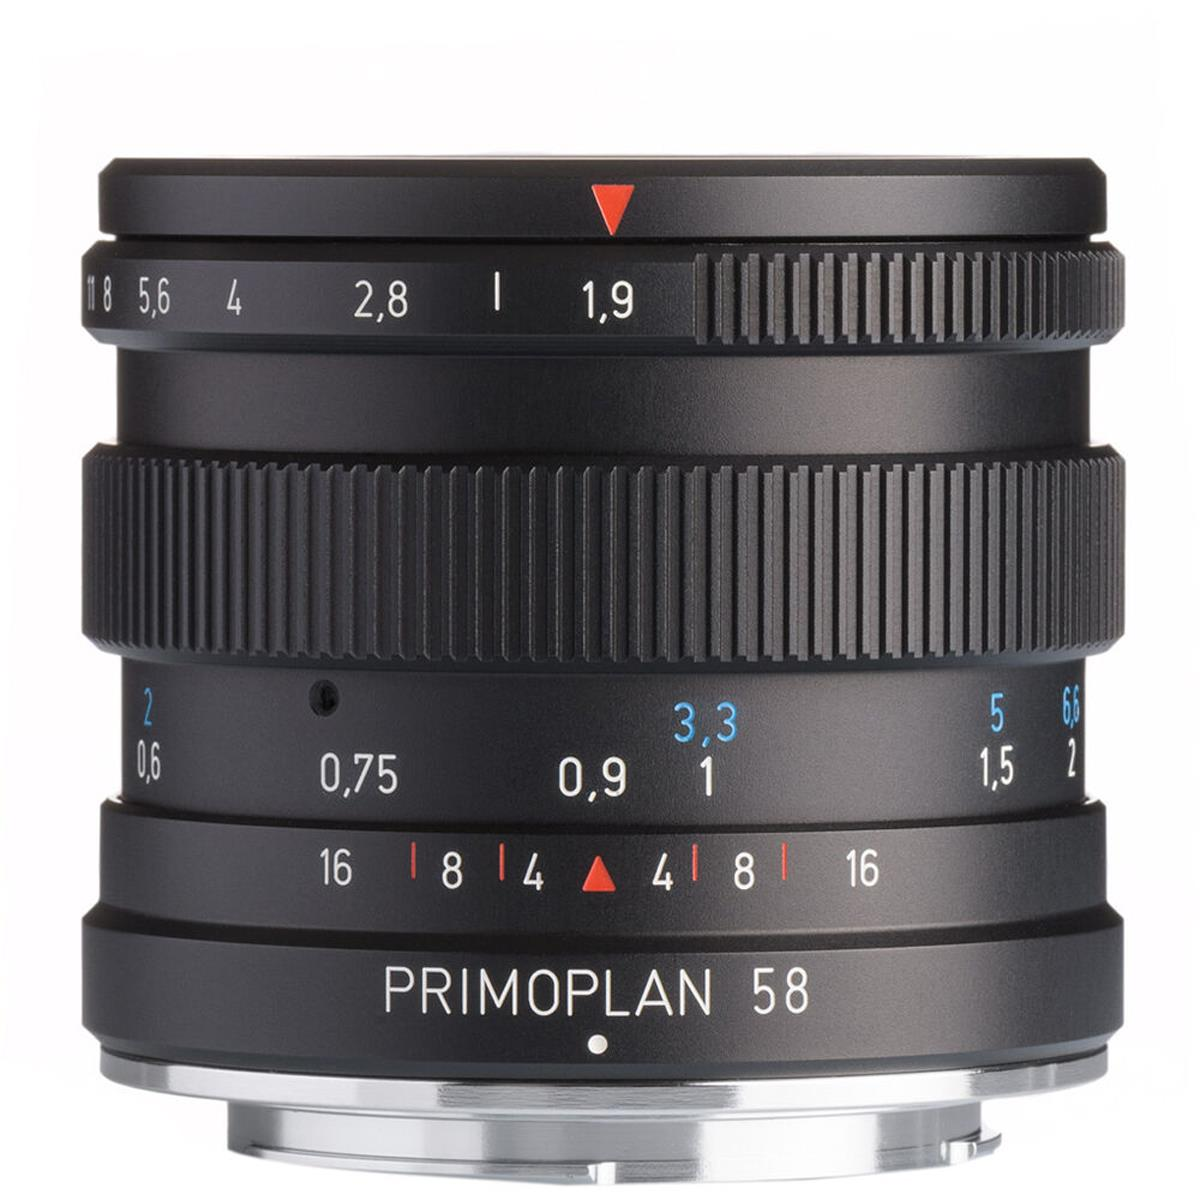 Meyer-Optik Gorlitz Primoplan 58 f1.9 II Lens for Sony E